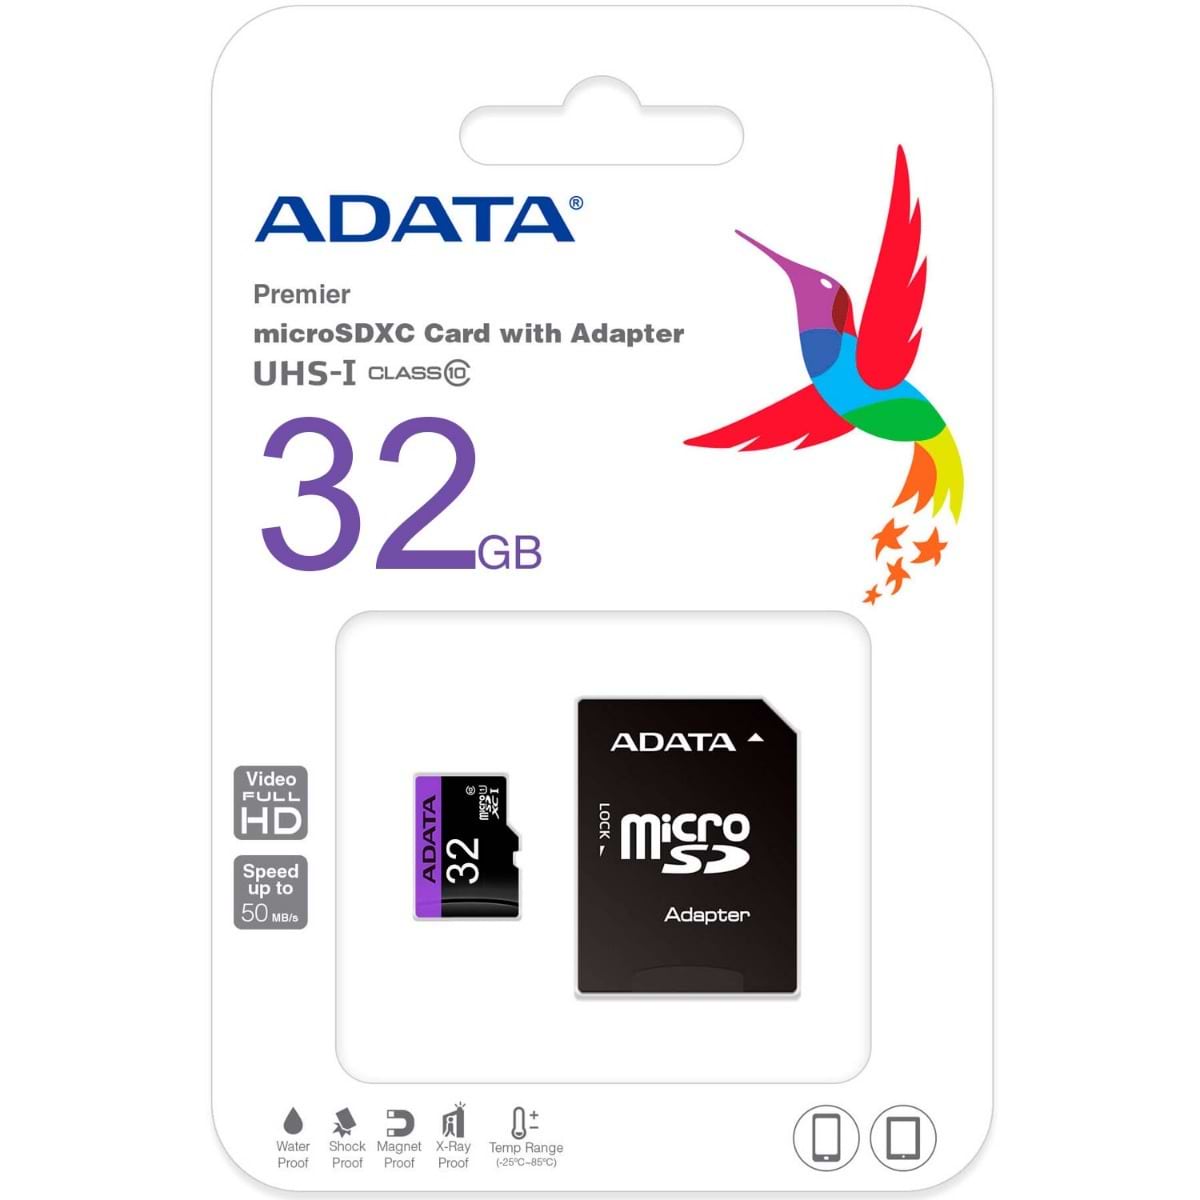 כרטיס זיכרון עם מתאם ADATA Premier microSDHC/SDXC UHS-I Class10 32GB - צבע שחור חמש שנות אחריות ע